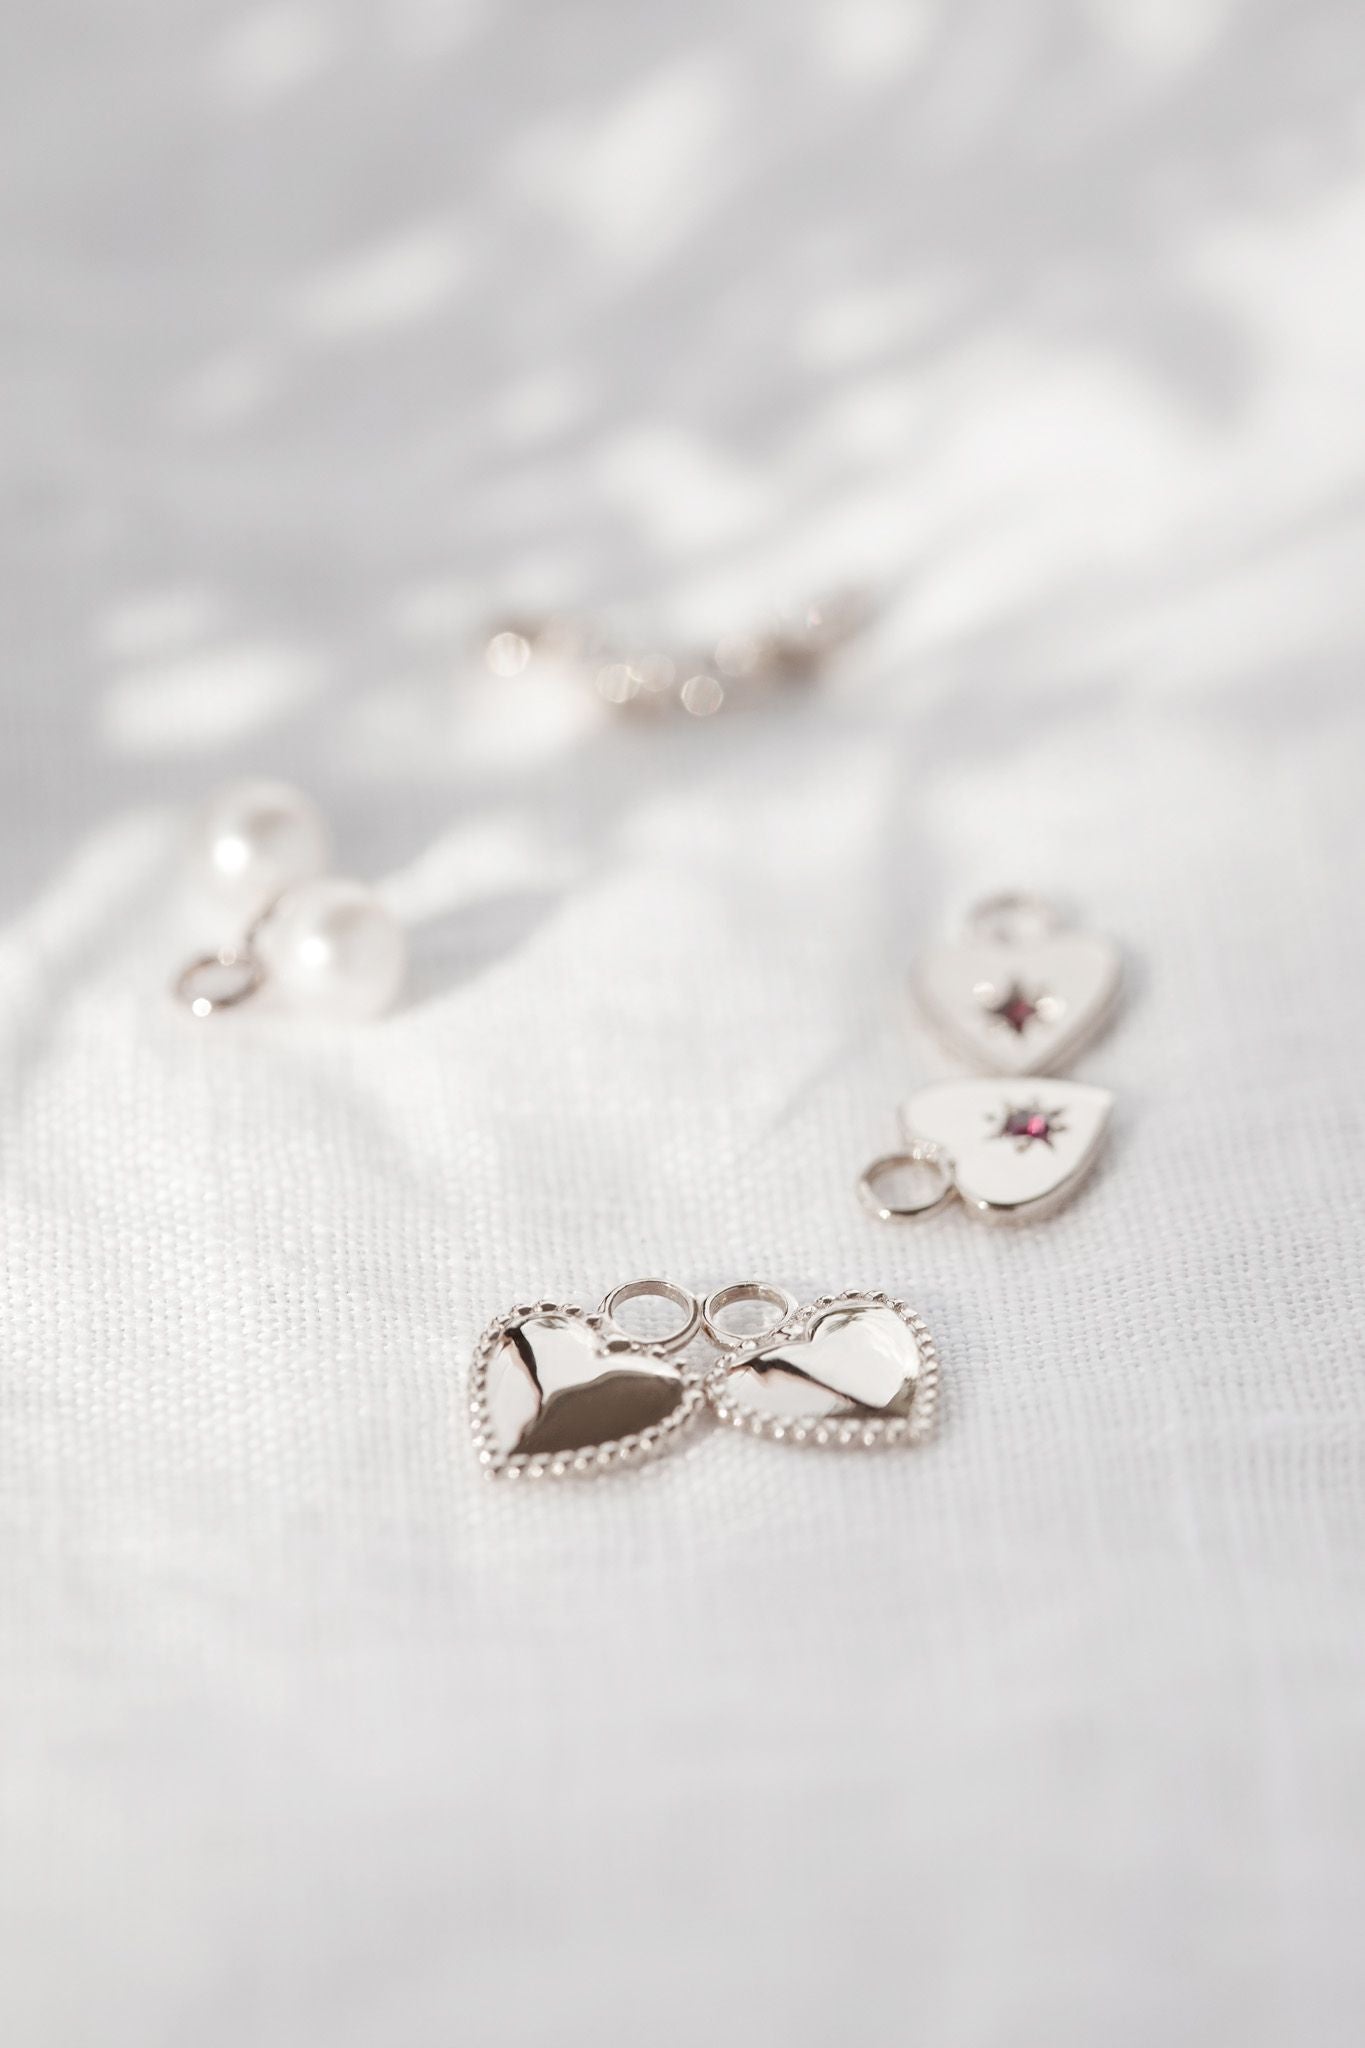 Elle Puffed Heart Pendant Earrings in 925 Sterling Silver